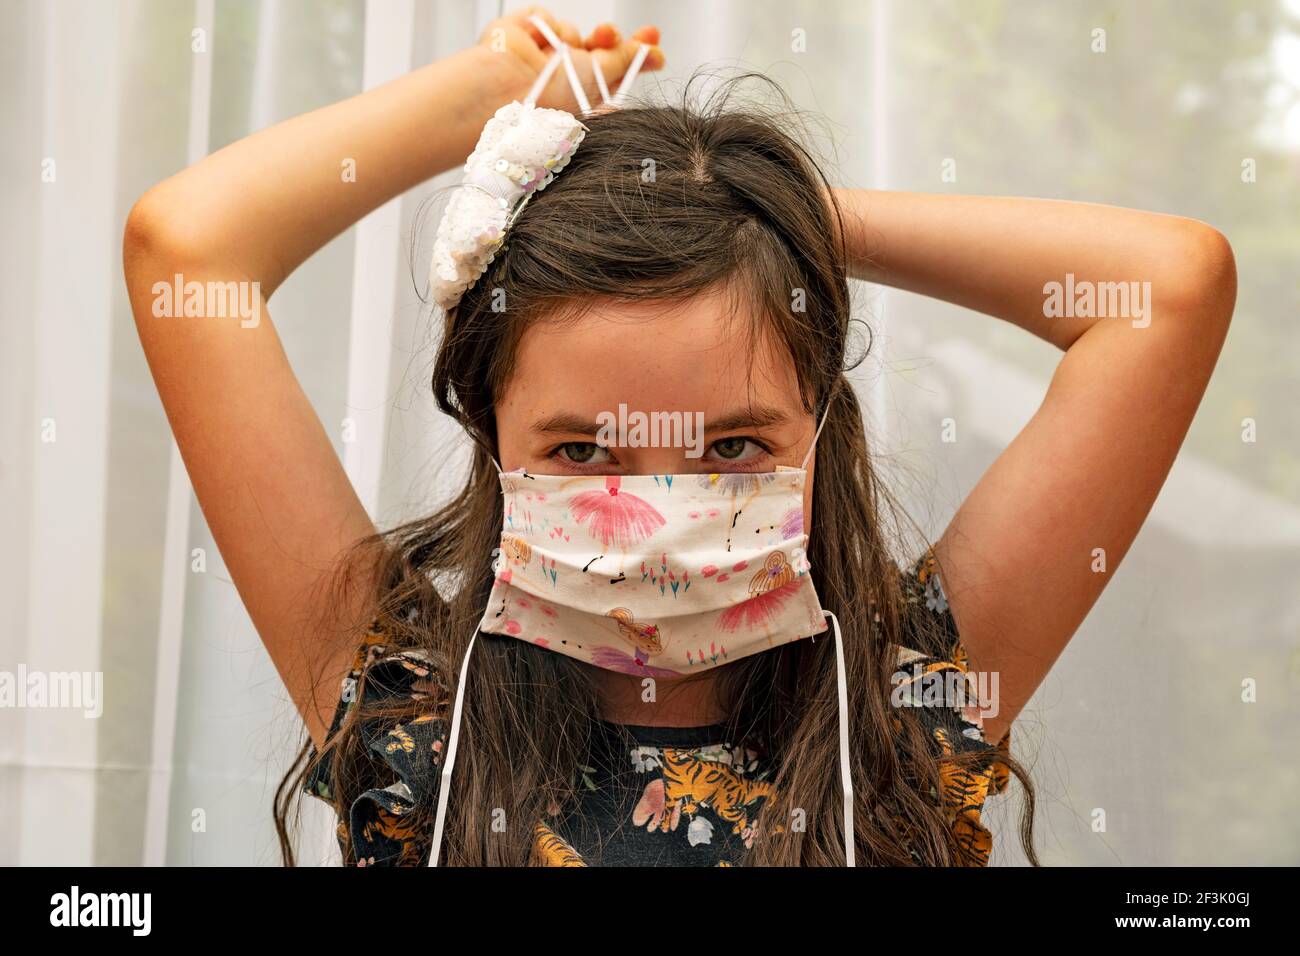 Jeune fille s'adaptant à un masque de visage fait maison Banque D'Images